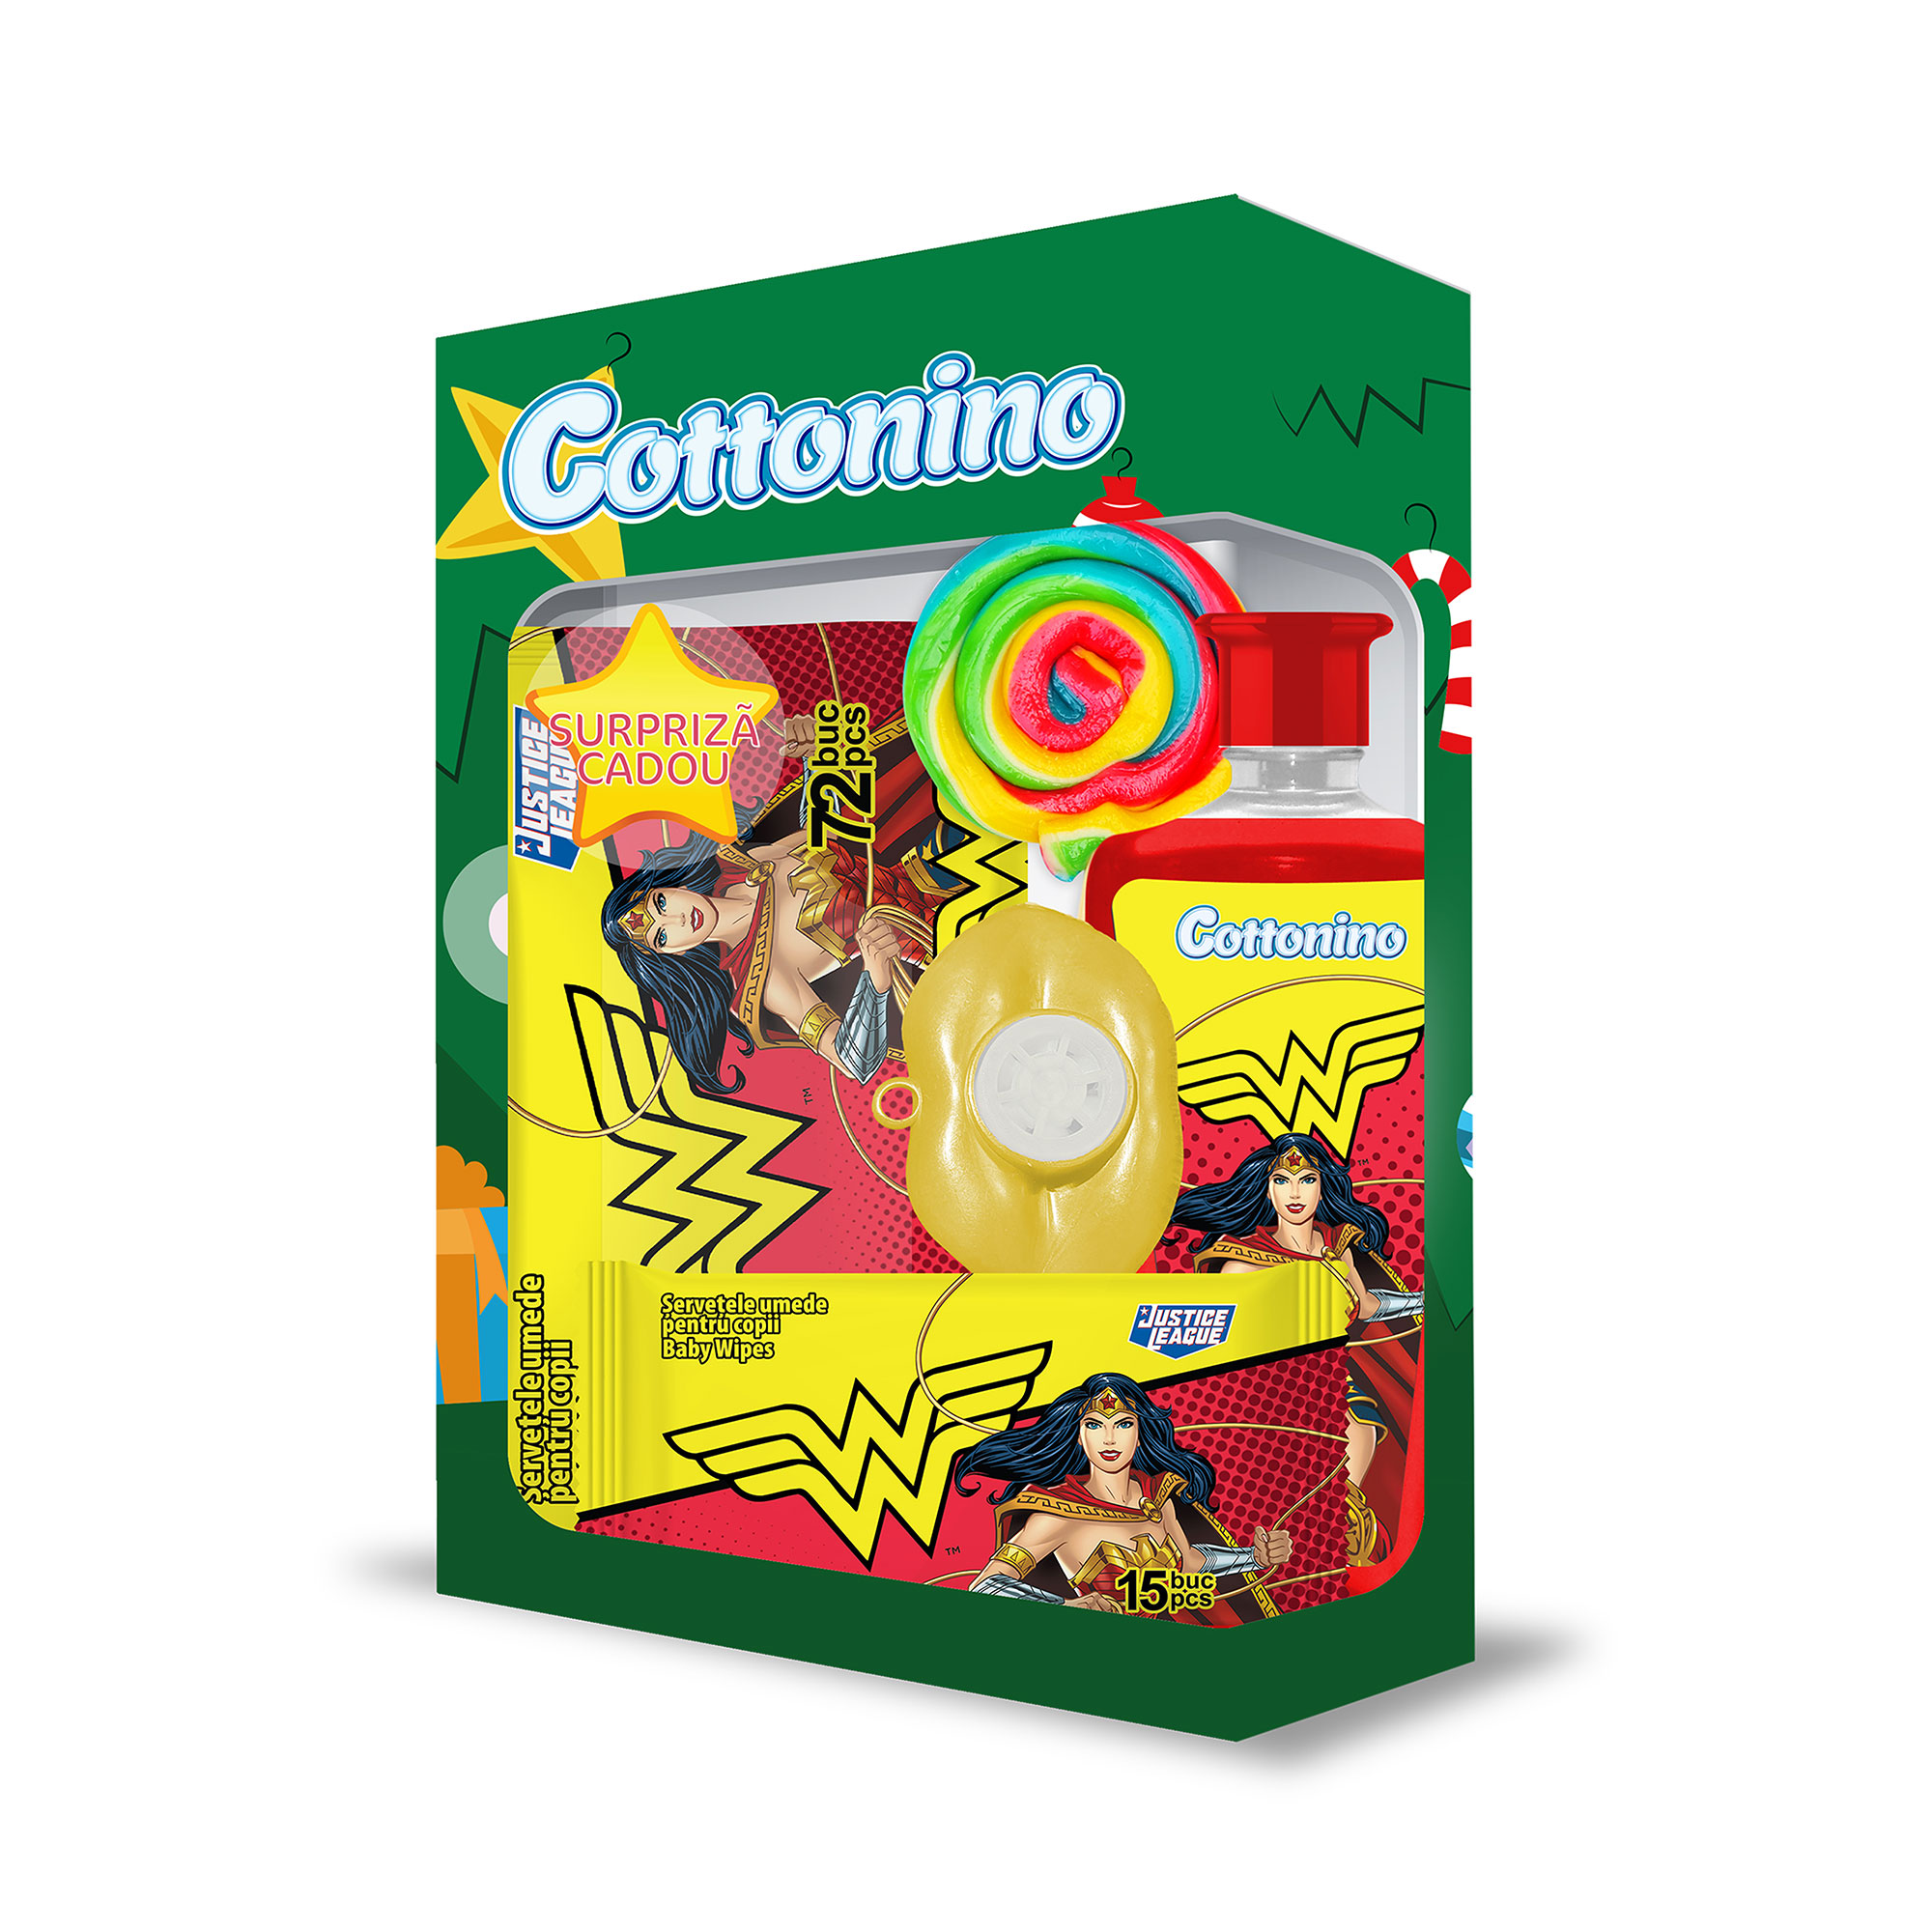 Cottonino Gift Box WONDER WOMEN